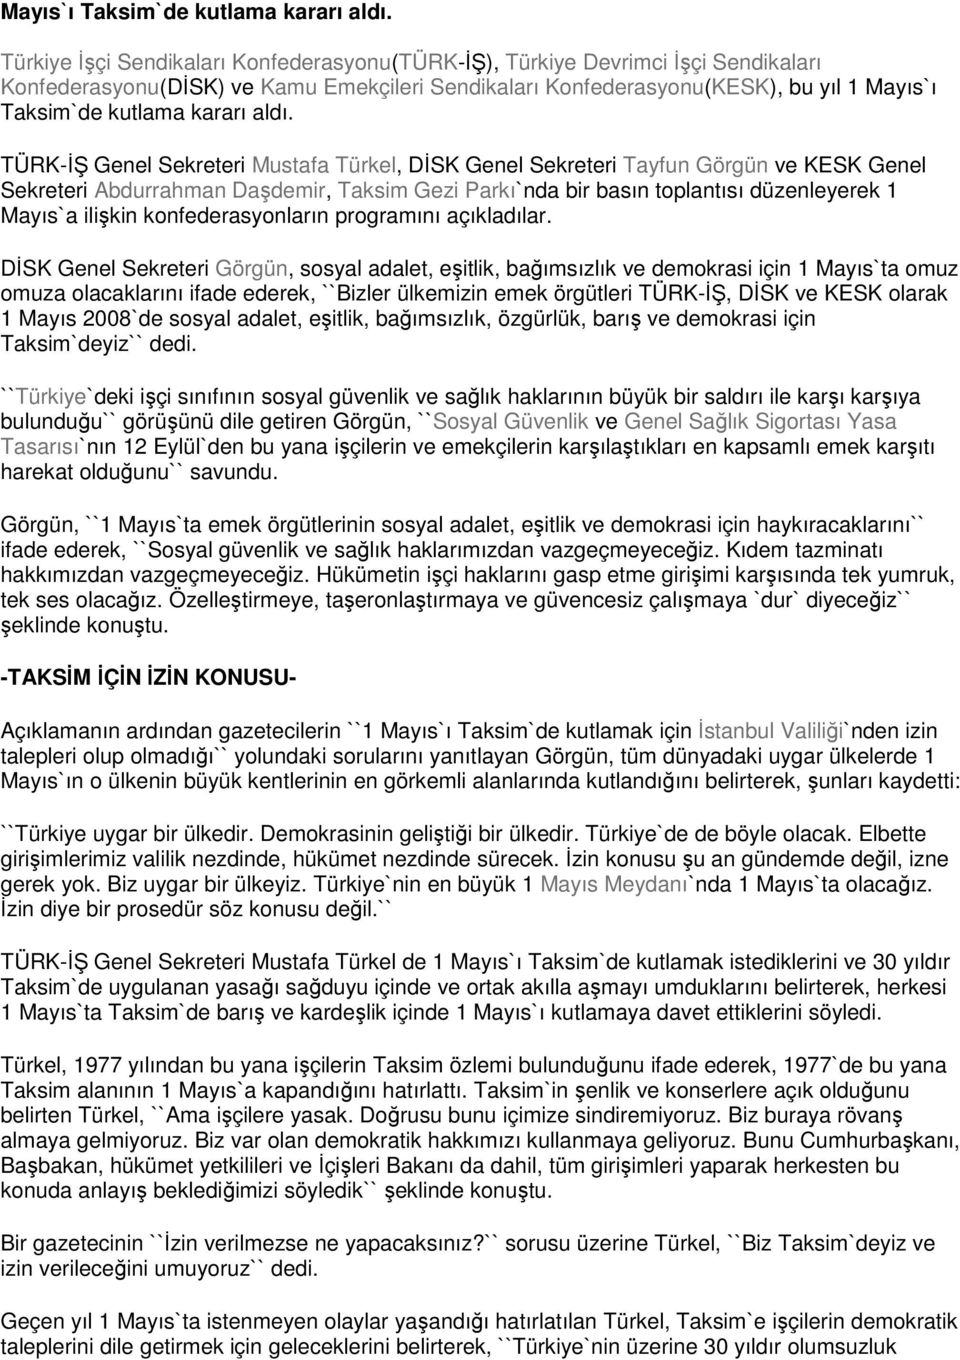 Türkel, DİSK Genel Sekreteri Tayfun Görgün ve KESK Genel Sekreteri Abdurrahman Daşdemir, Taksim Gezi Parkı`nda bir basın toplantısı düzenleyerek 1 Mayıs`a ilişkin konfederasyonların programını